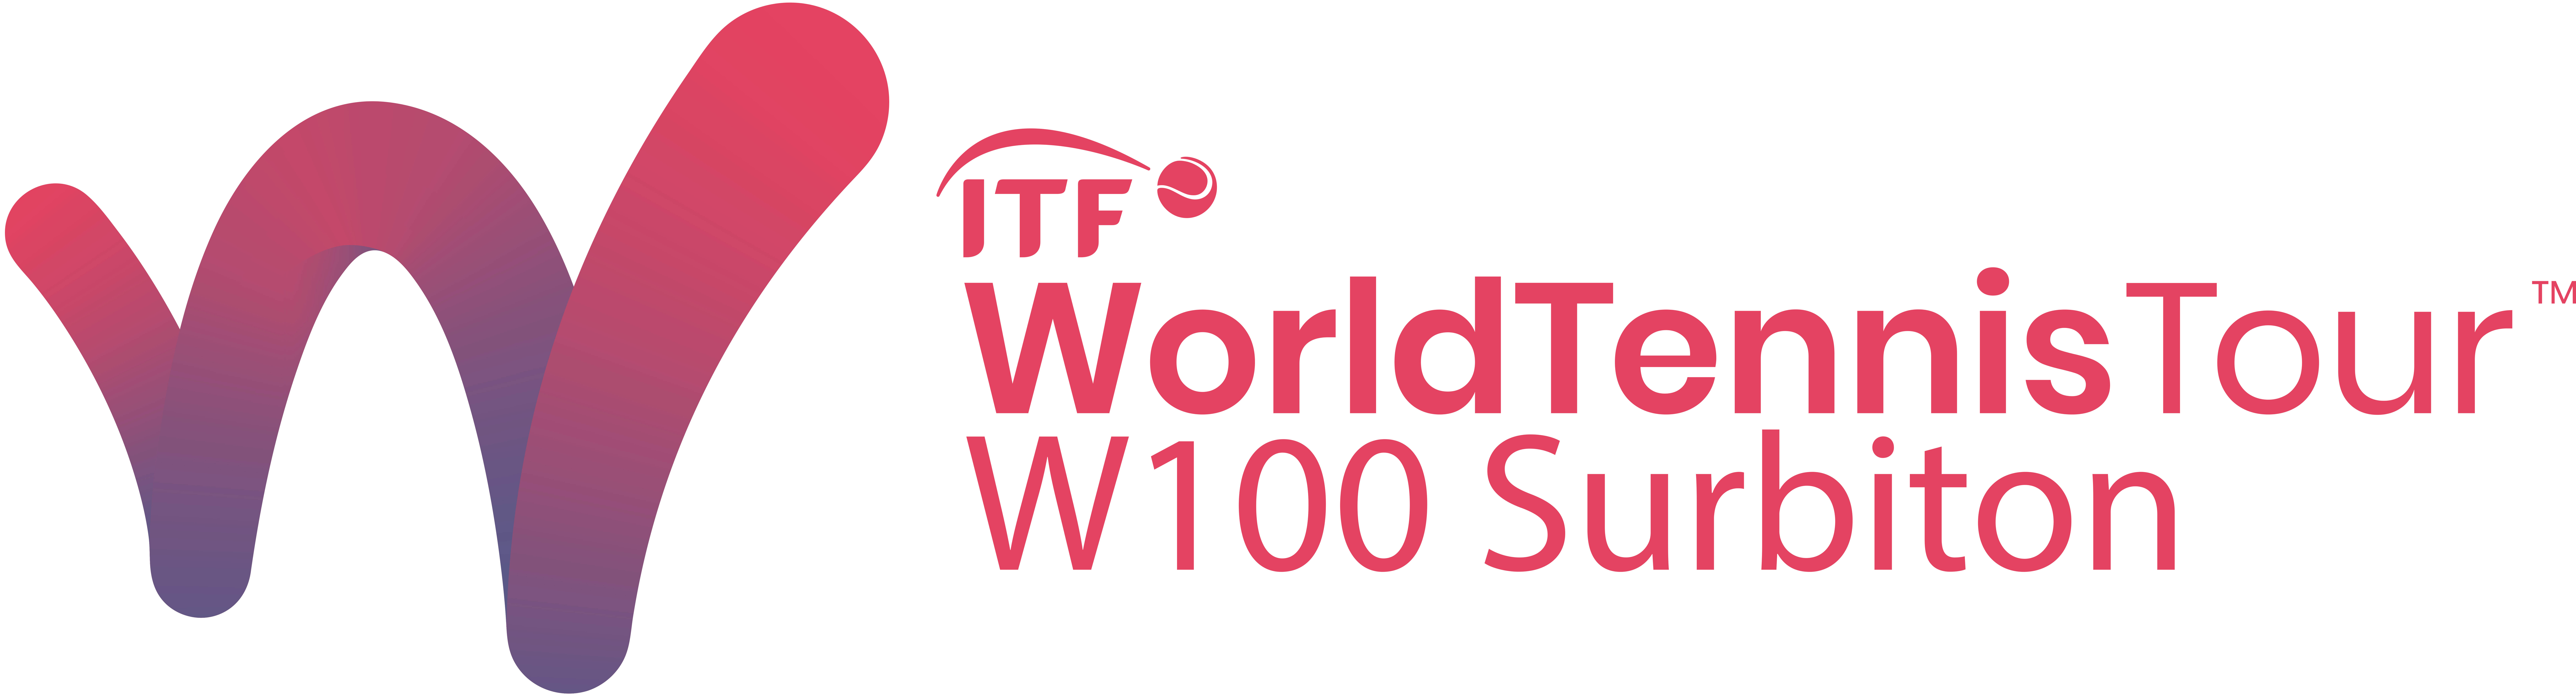 W100 Surbiton logo